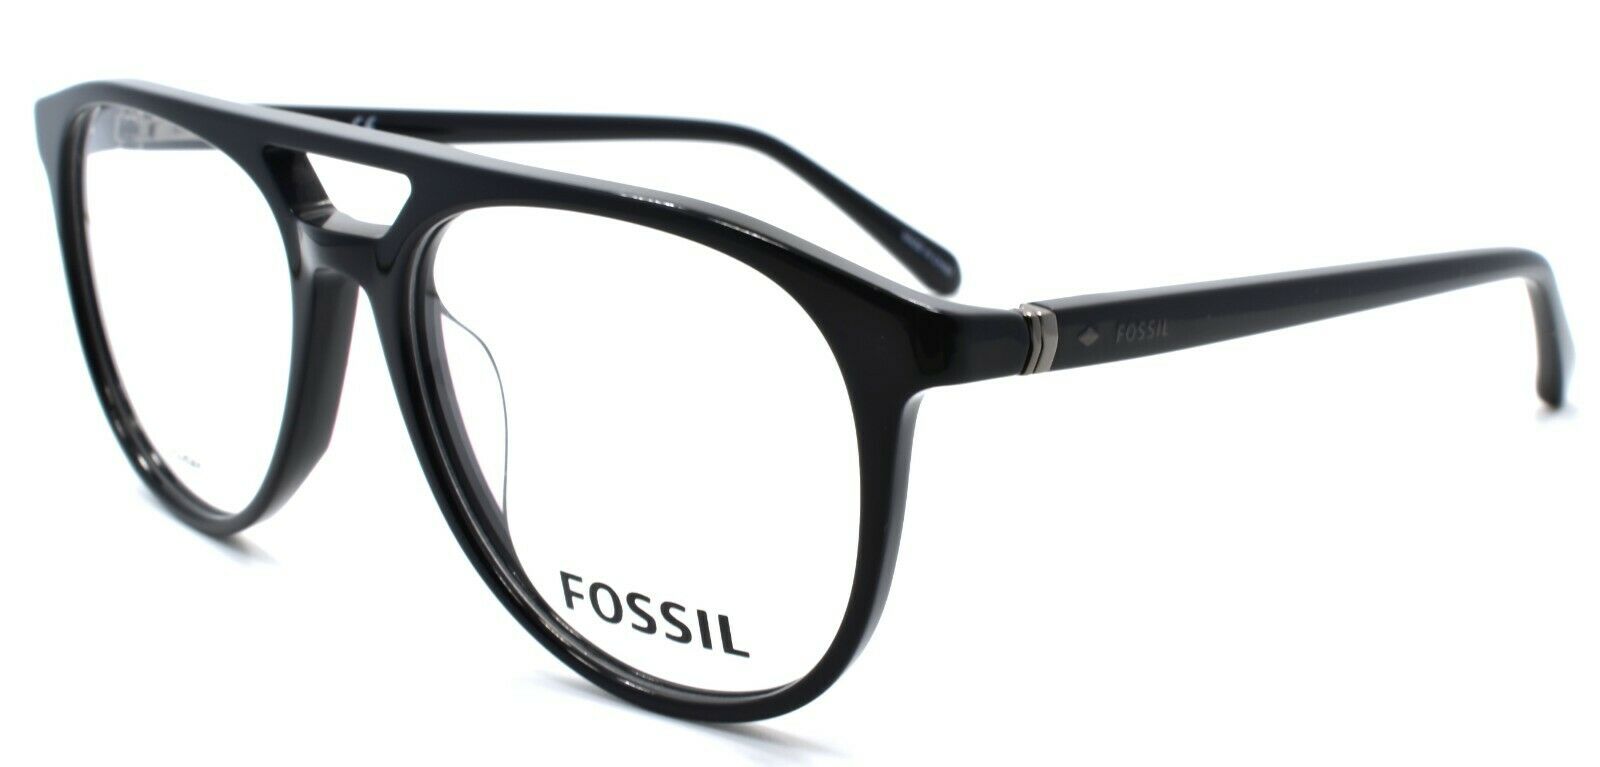 1-Fossil FOS 7054 807 Men's Eyeglasses Frames Aviator 53-16-145 Black-716736165875-IKSpecs